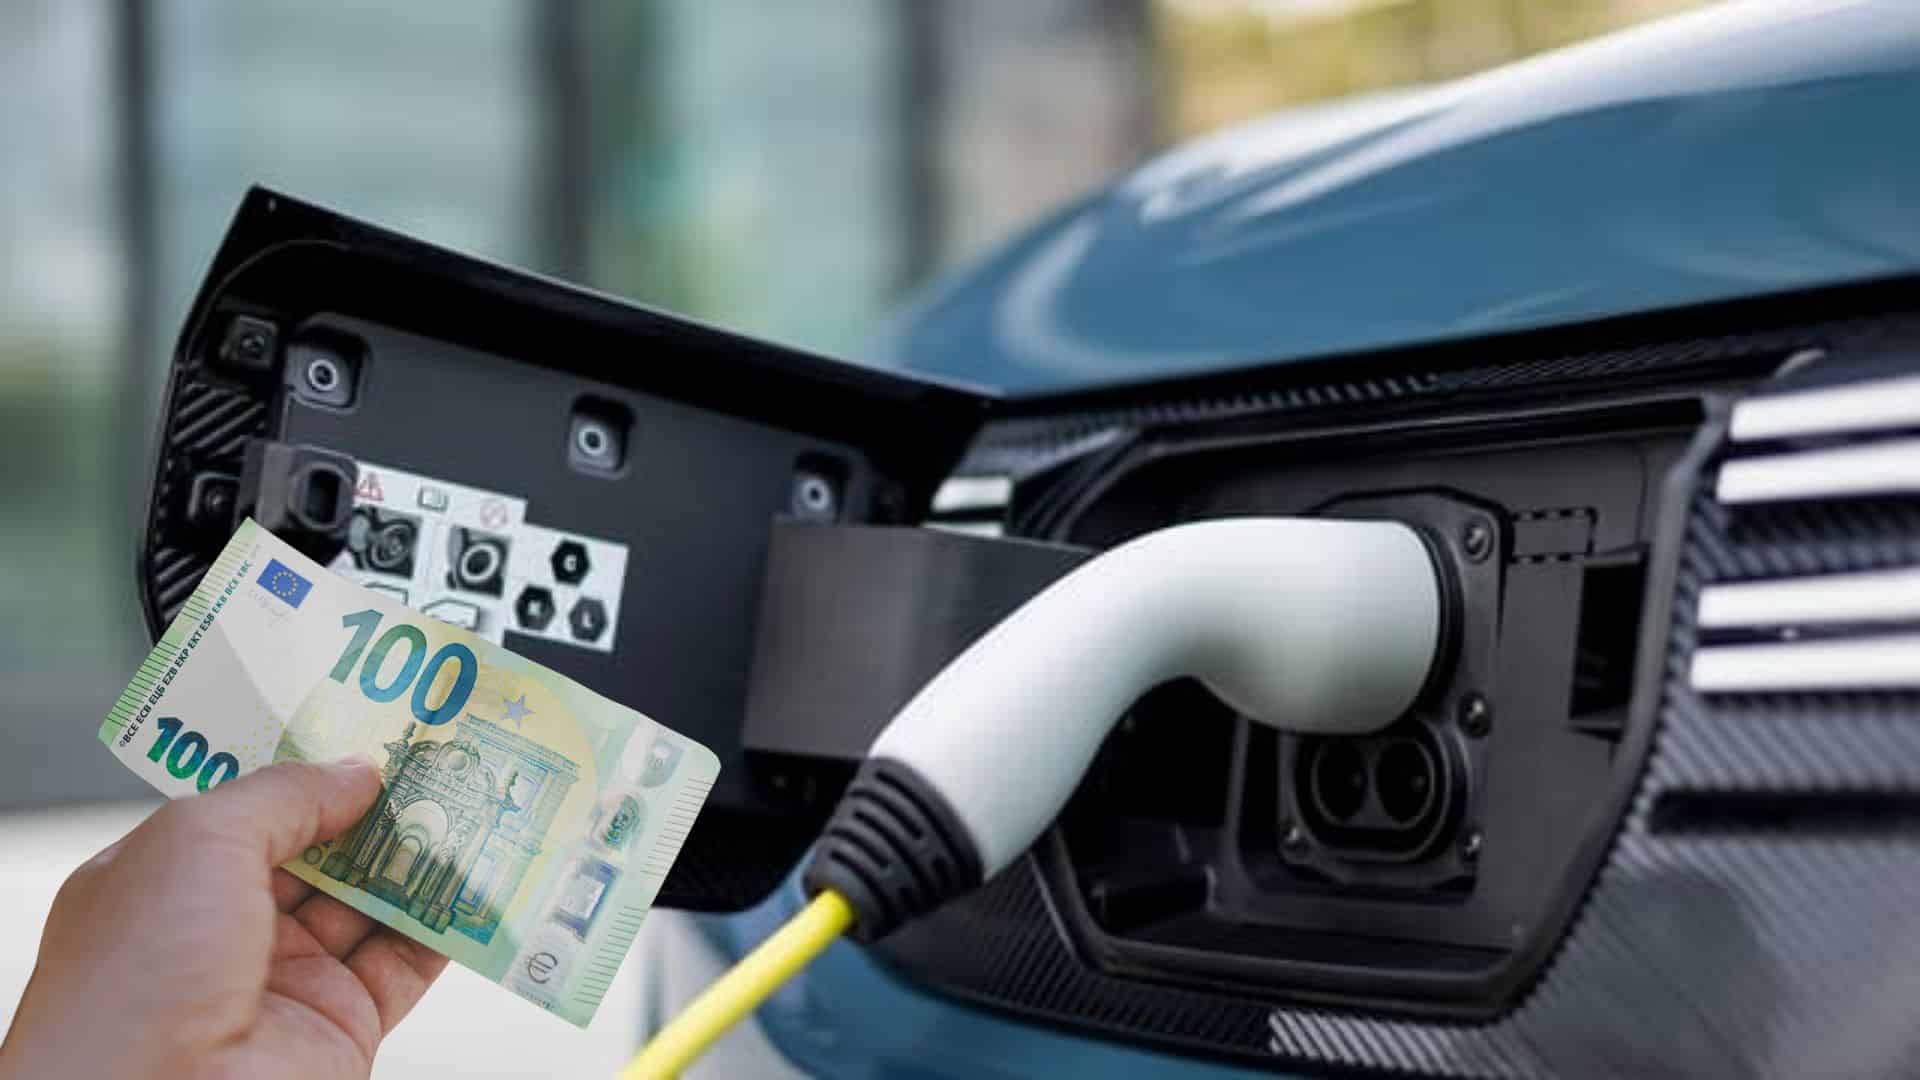 Mobilité électrique : Le nouveau leasing à 100 Euros en France